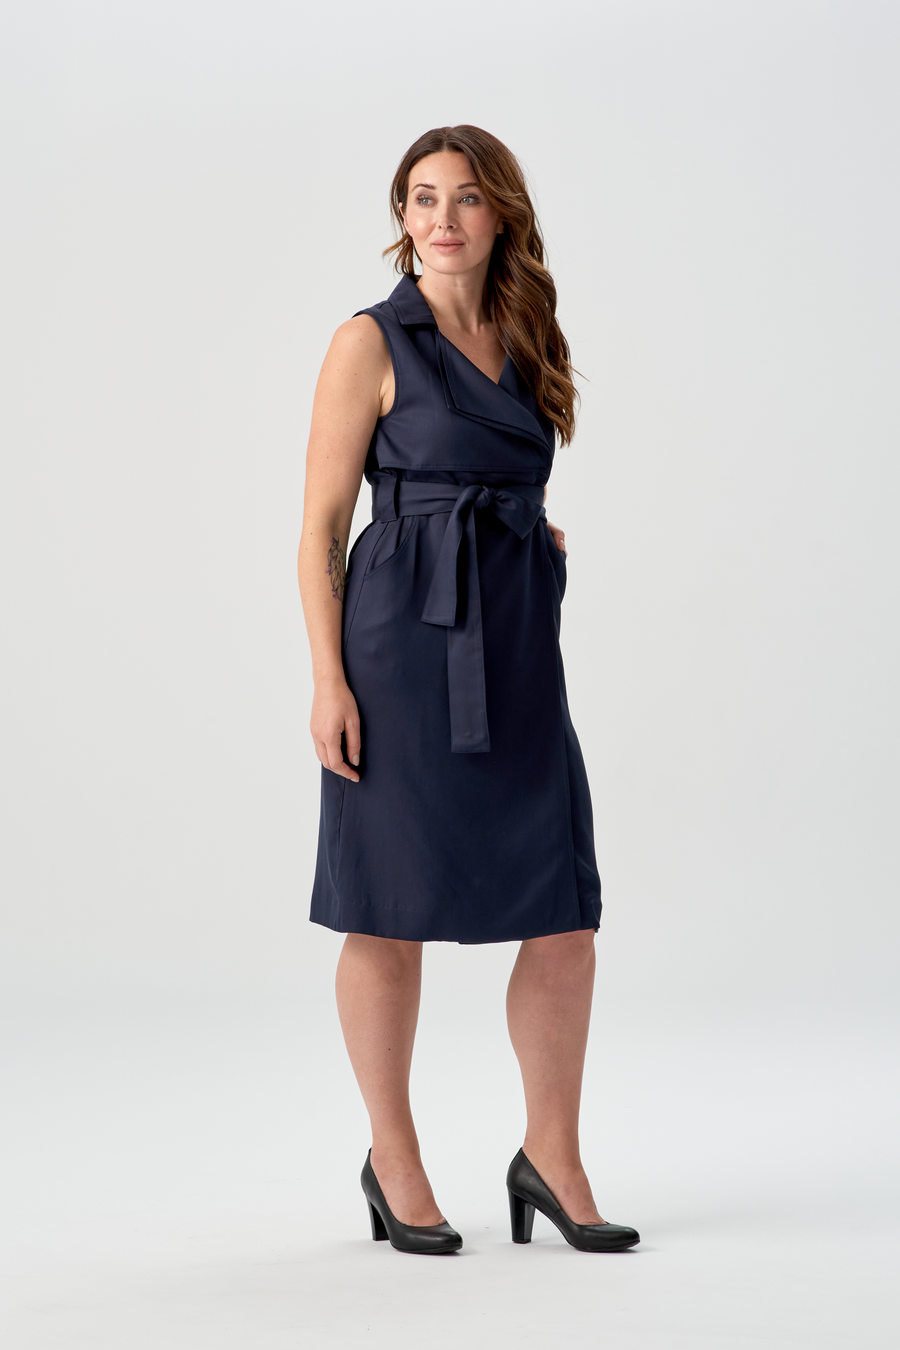 woman wearing navy blue vest dress